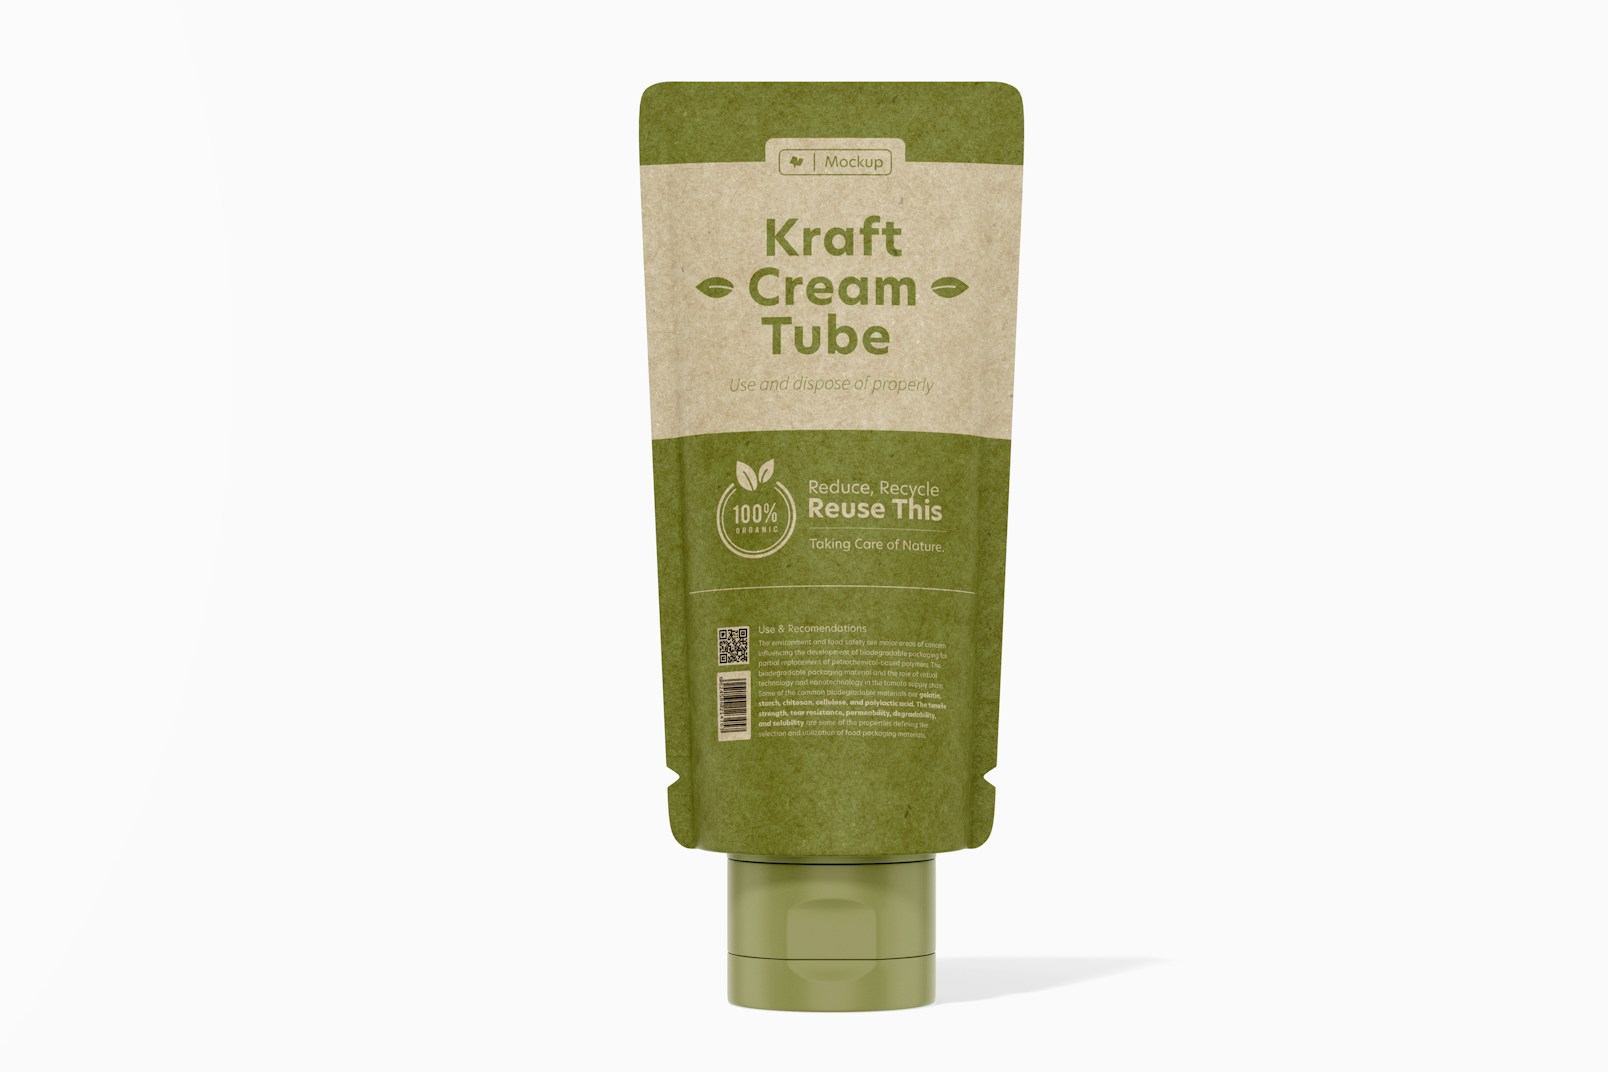 Maqueta de Tubo de Crema en Kraft, Vista Frontal